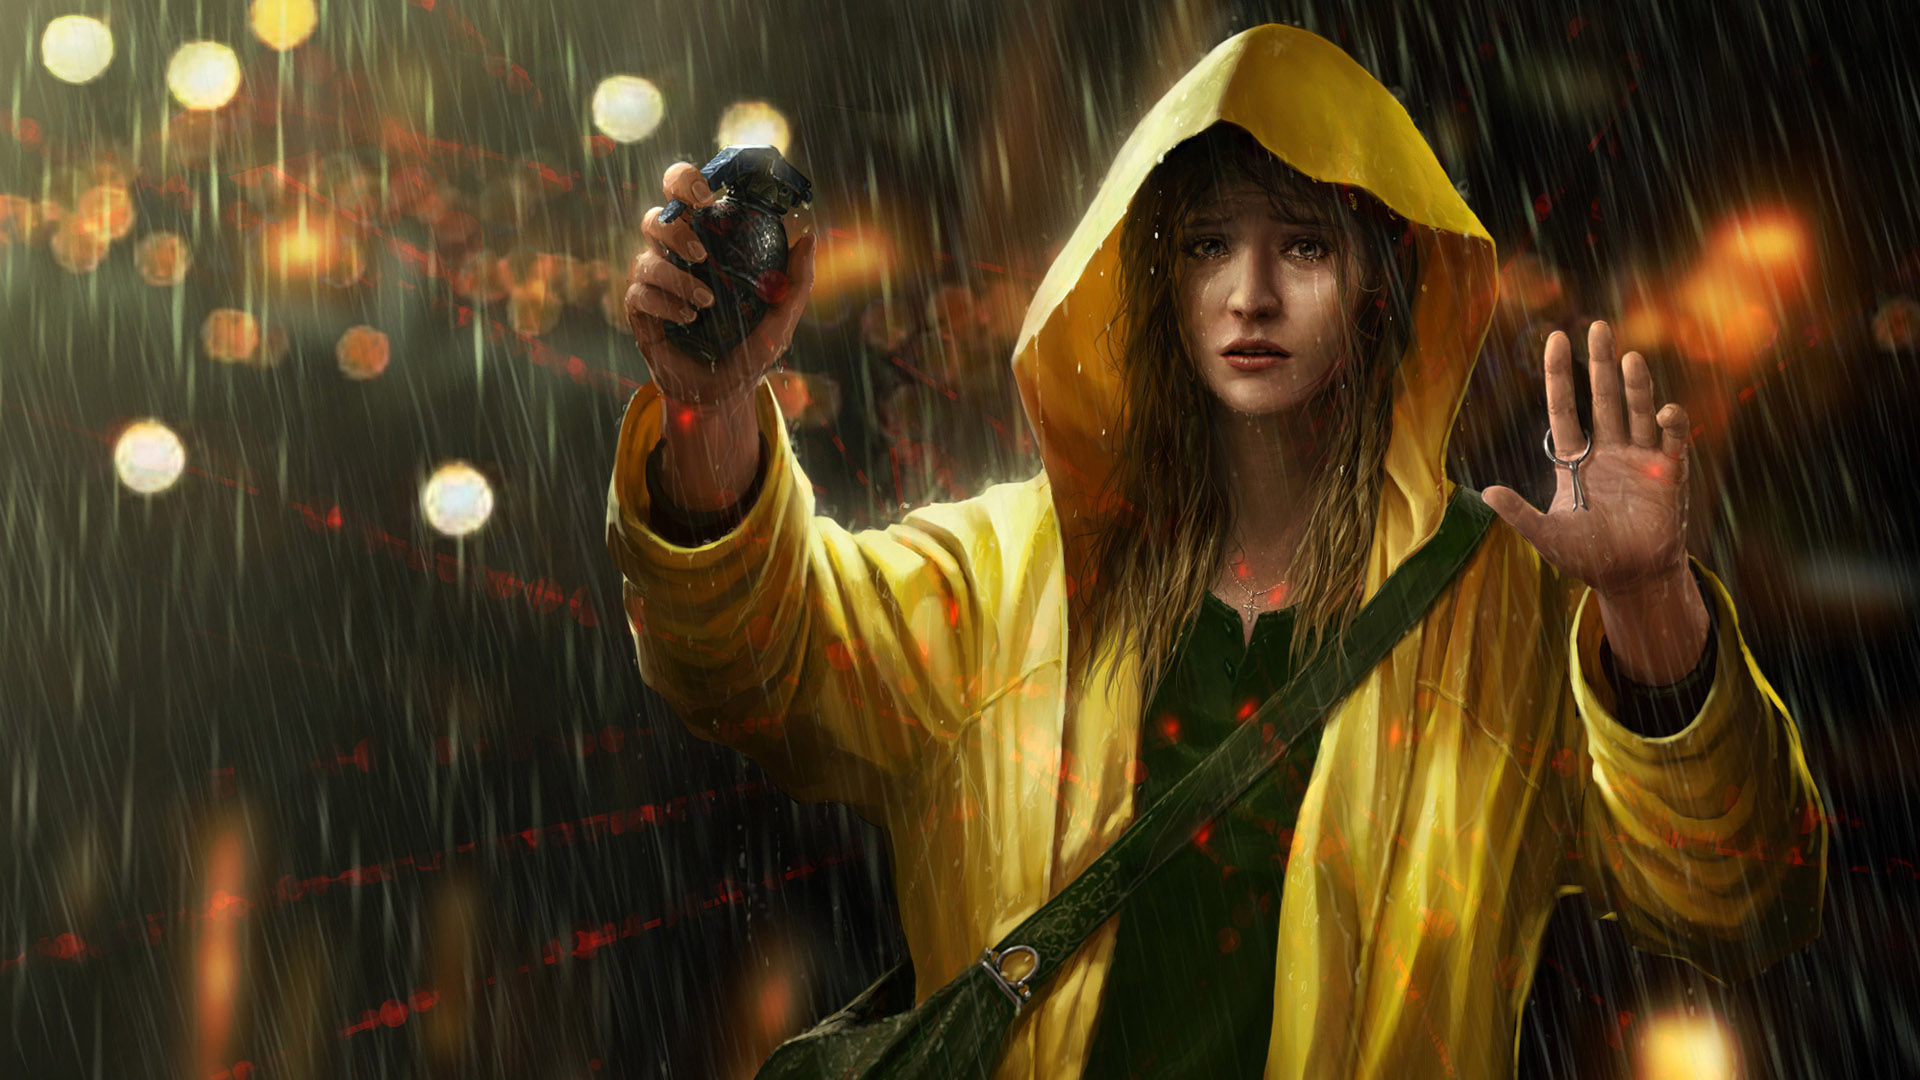 Sad Girl In Rain Wallpaper For All Desktop Monitors, - Girl In Yellow Raincoat - HD Wallpaper 